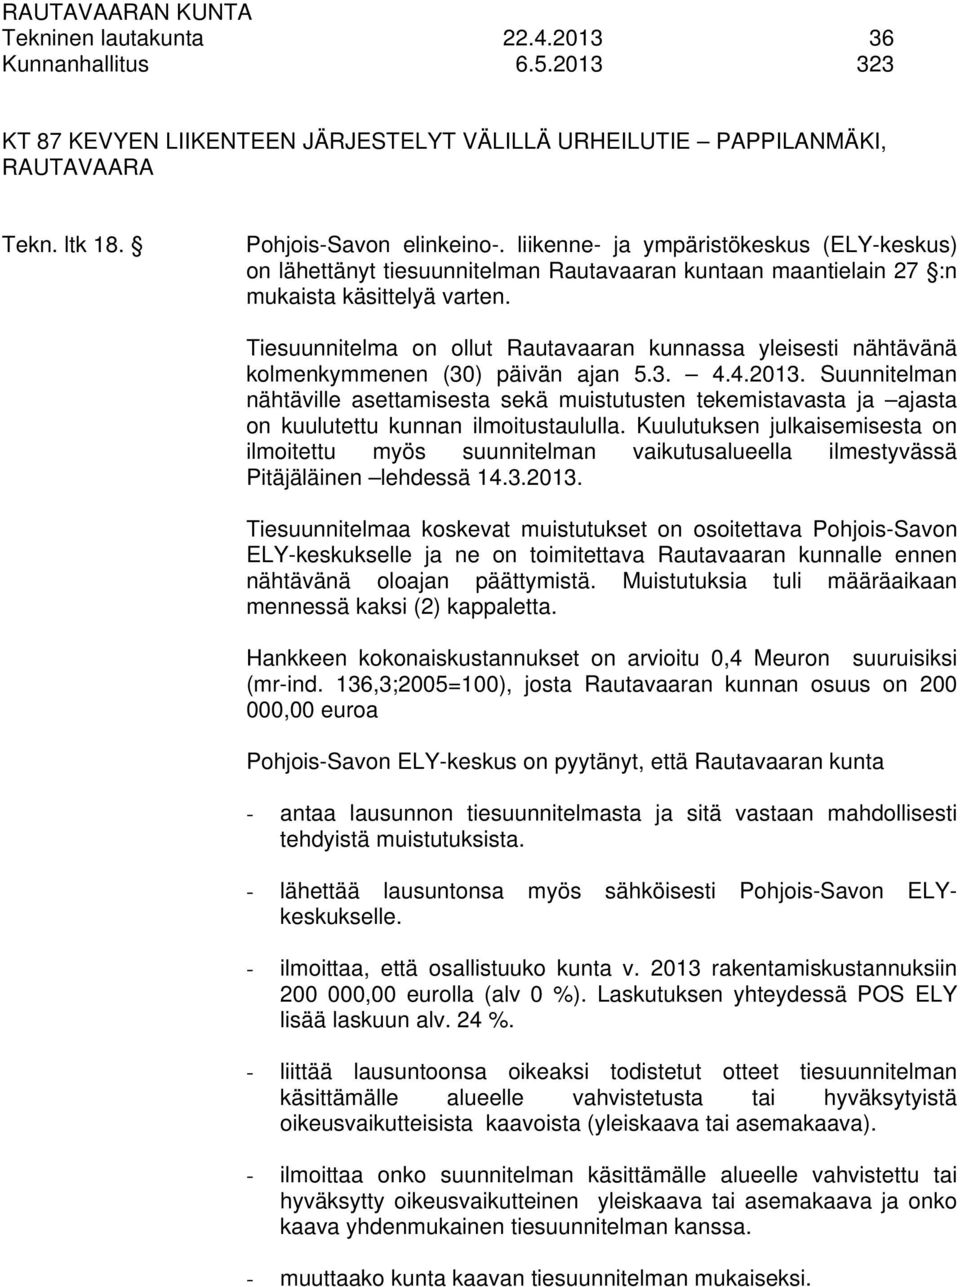 Tiesuunnitelma on ollut Rautavaaran kunnassa yleisesti nähtävänä kolmenkymmenen (30) päivän ajan 5.3. 4.4.2013.